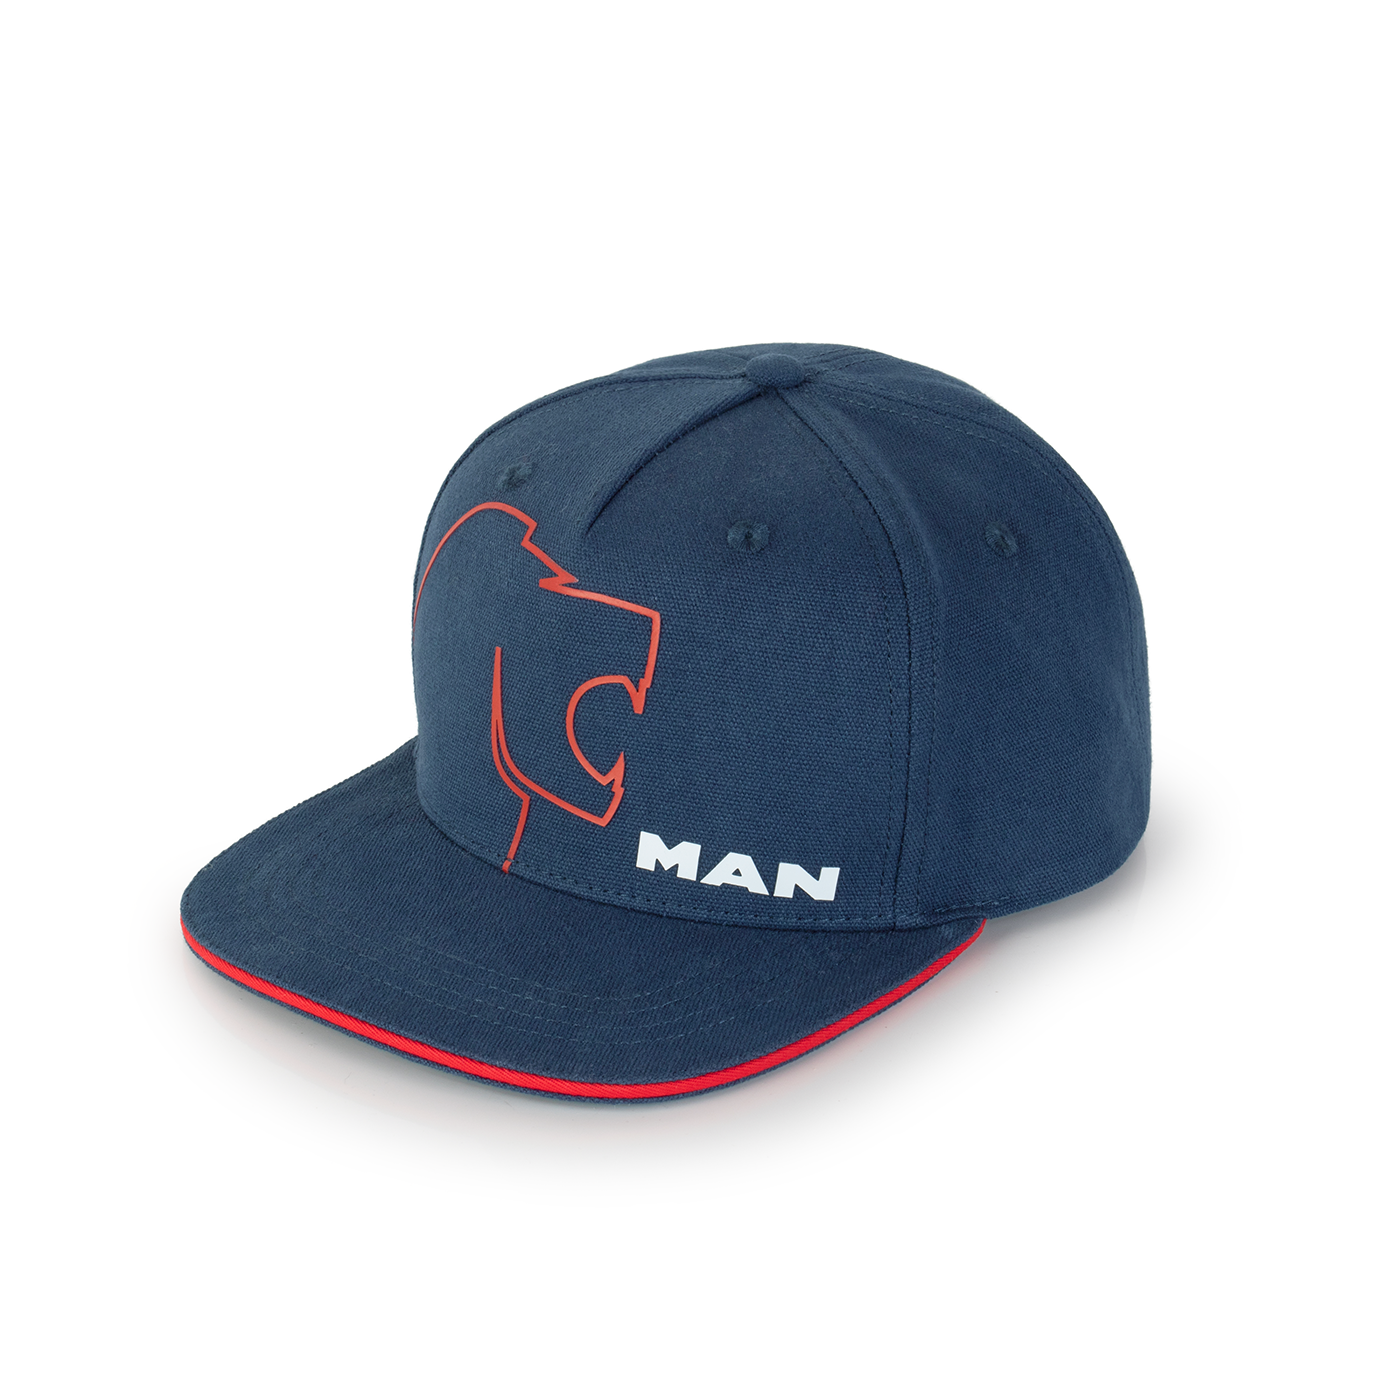 MAN Lion Collection Unisex flat cap